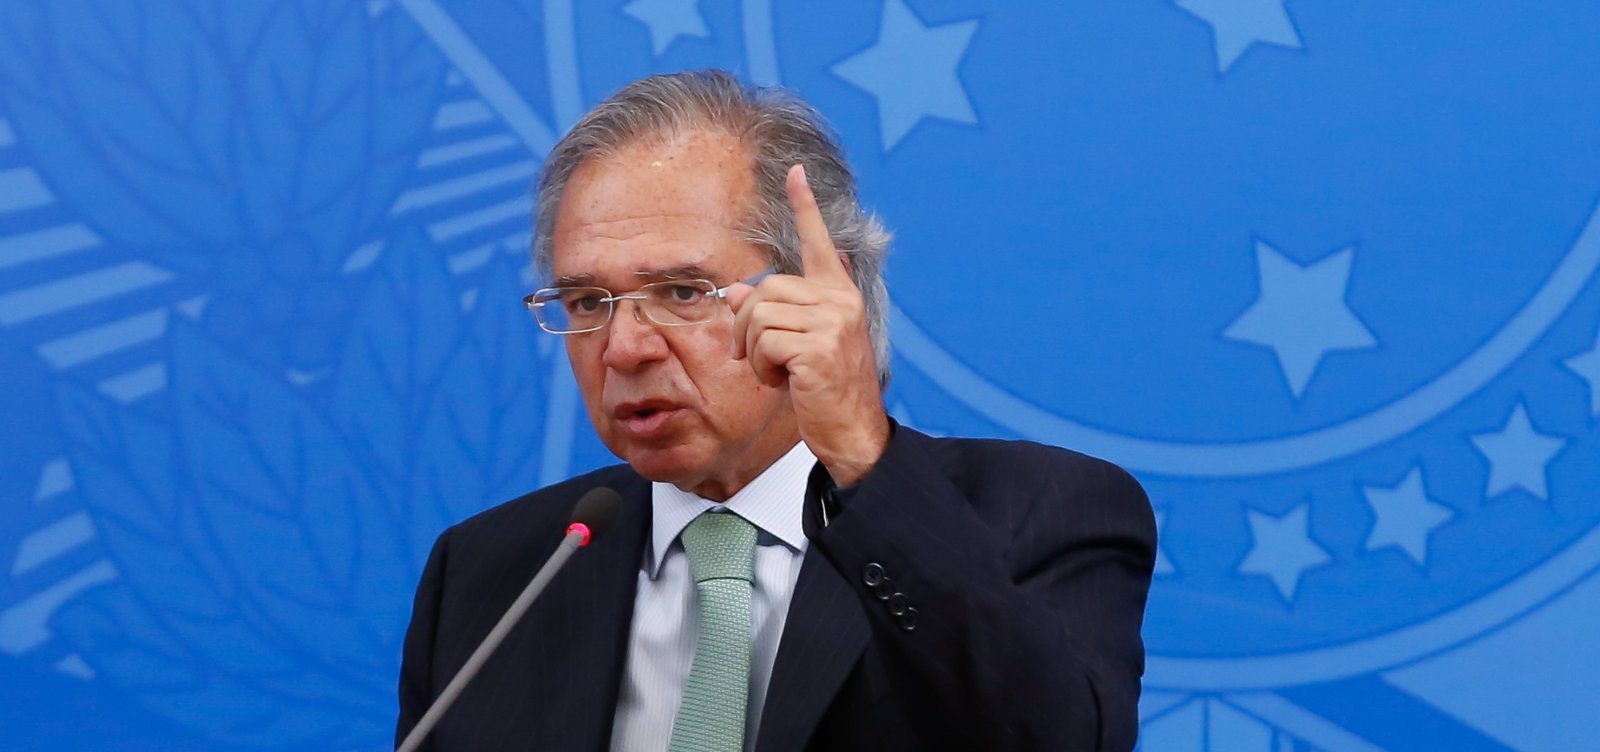 'Tem que vender essa porra logo', diz Guedes sobre o Banco do Brasil